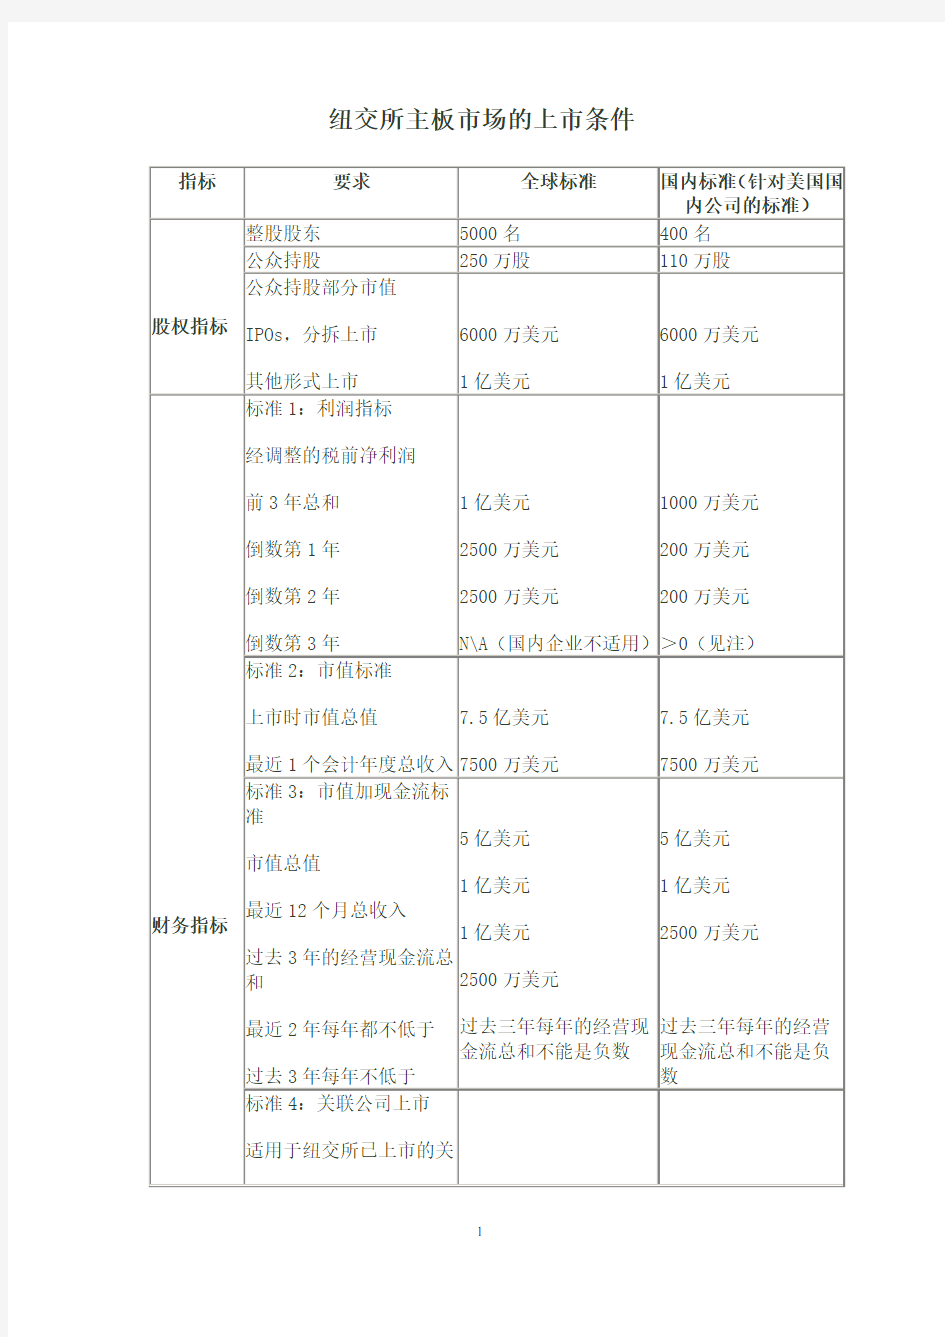 中国大陆、美国、香港上市条件及流程